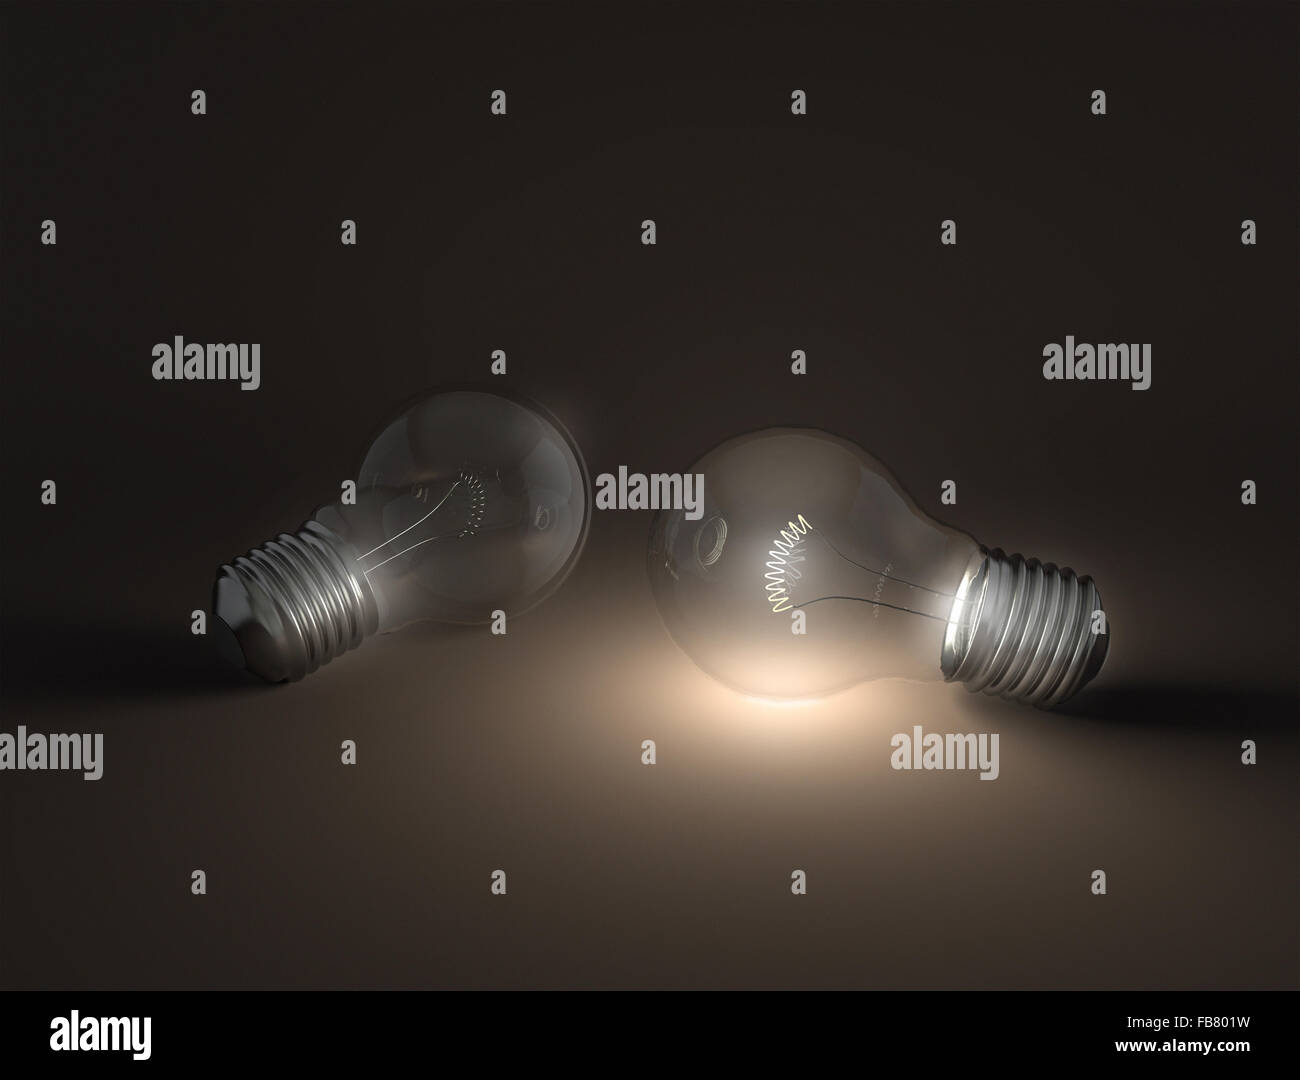 Le due lampadine, uno è illuminato di altri è scuro, rendendo un piacevole contrasto. La zona vuota per la tua progettazione al di sopra o al di sotto. Foto Stock